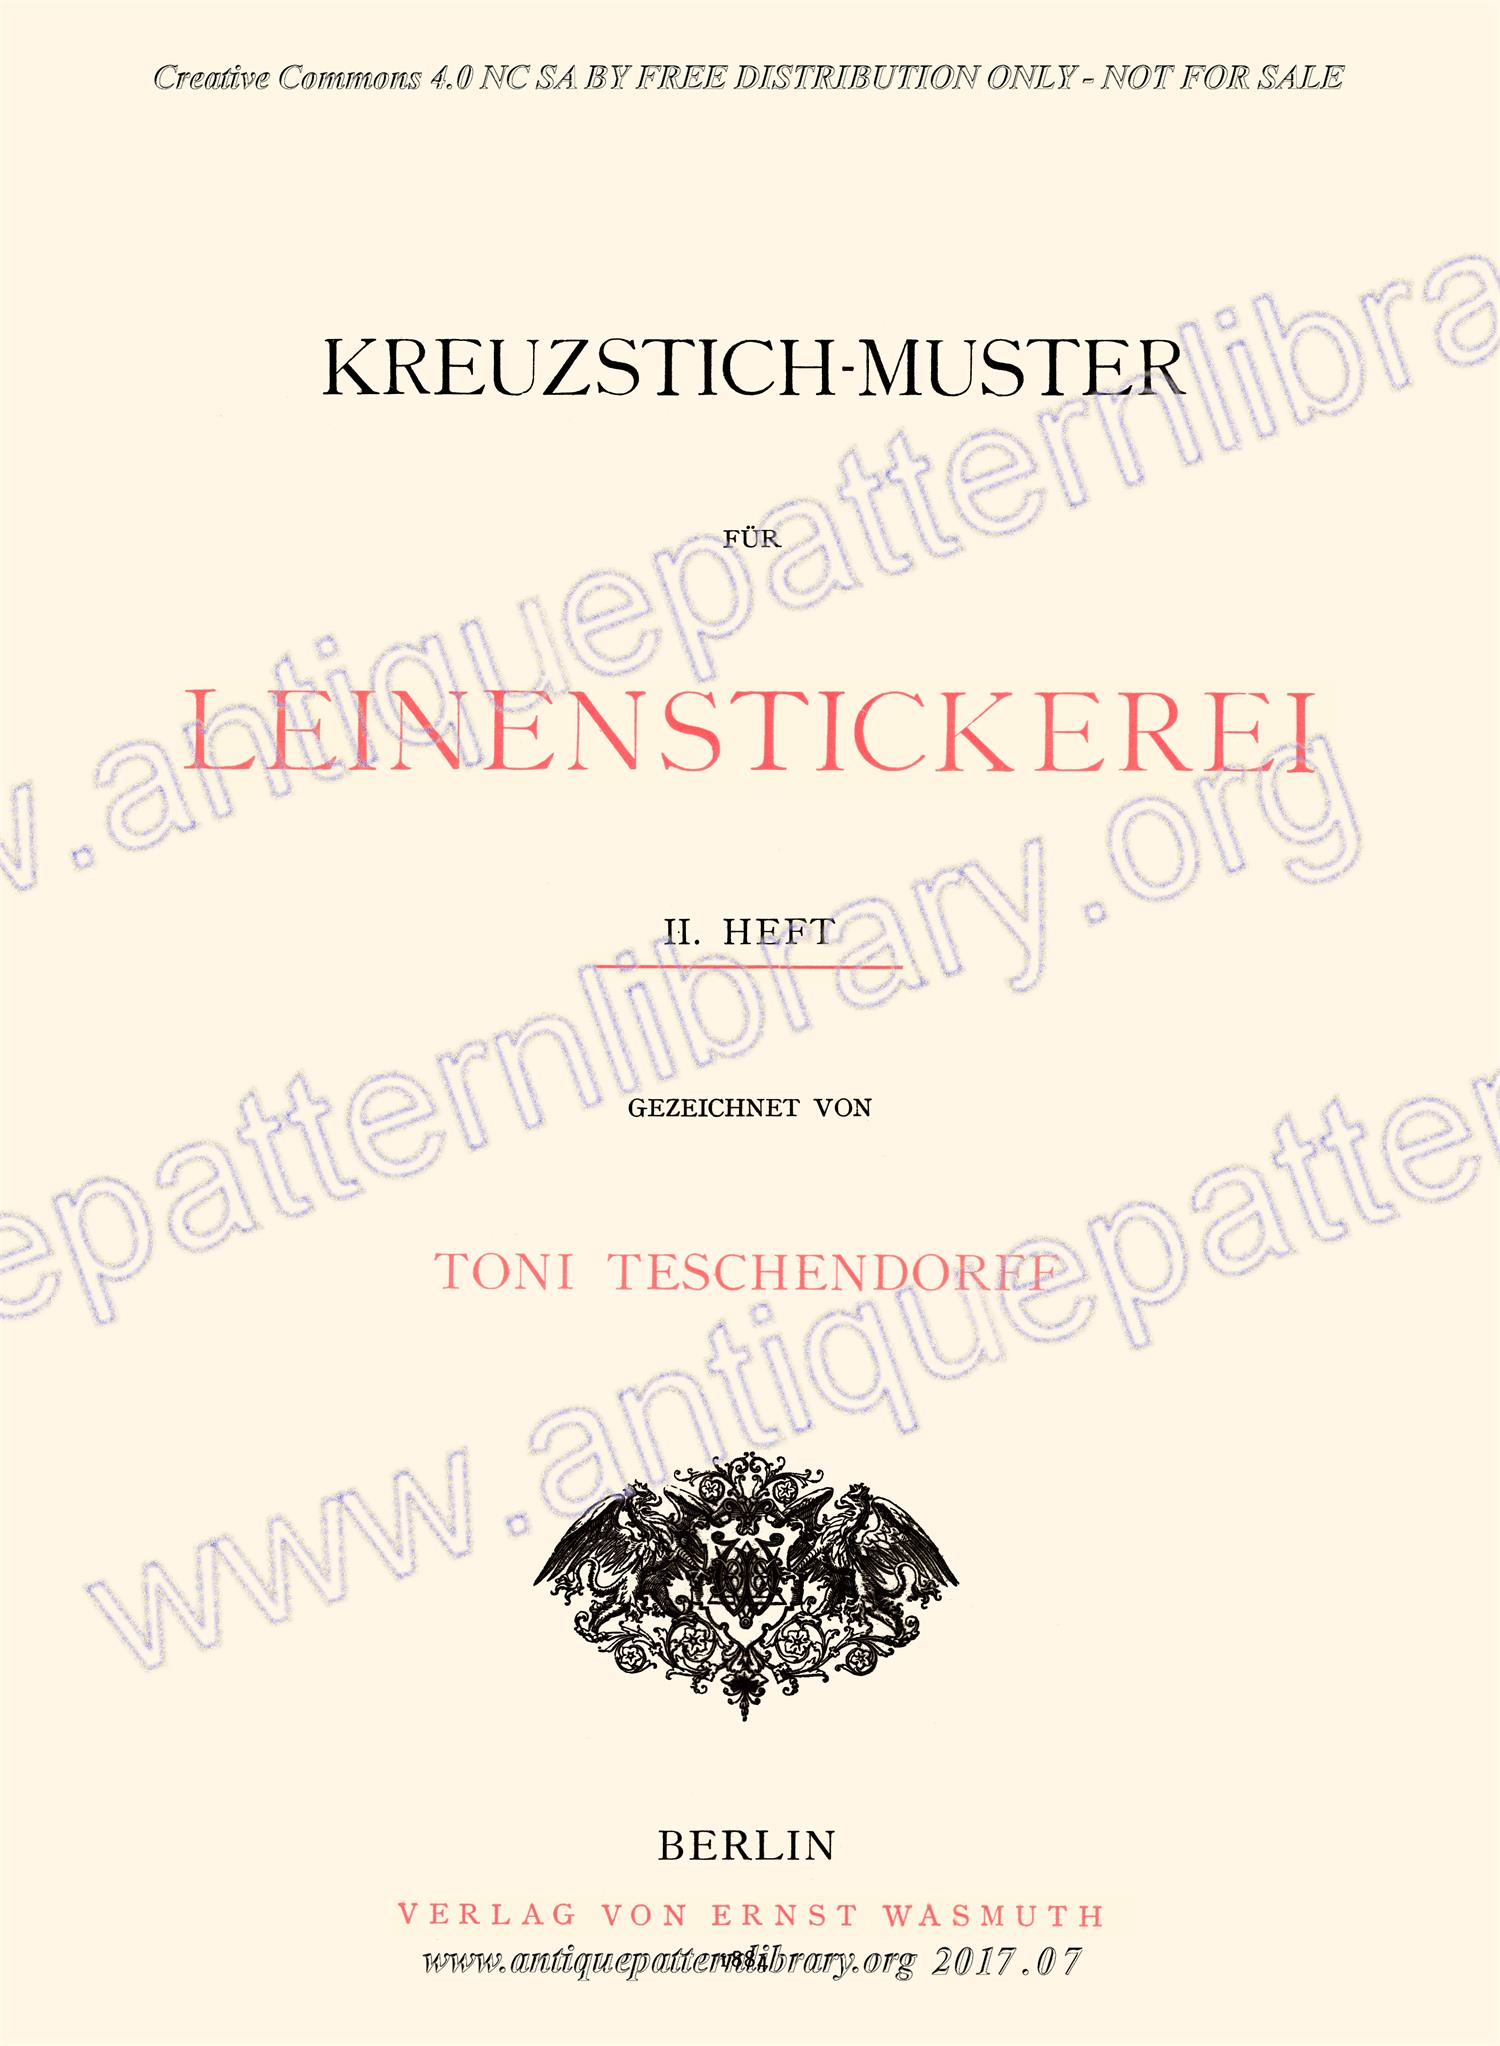 H-RM030 Kreuzstich-Muster fur Leinenstickerei